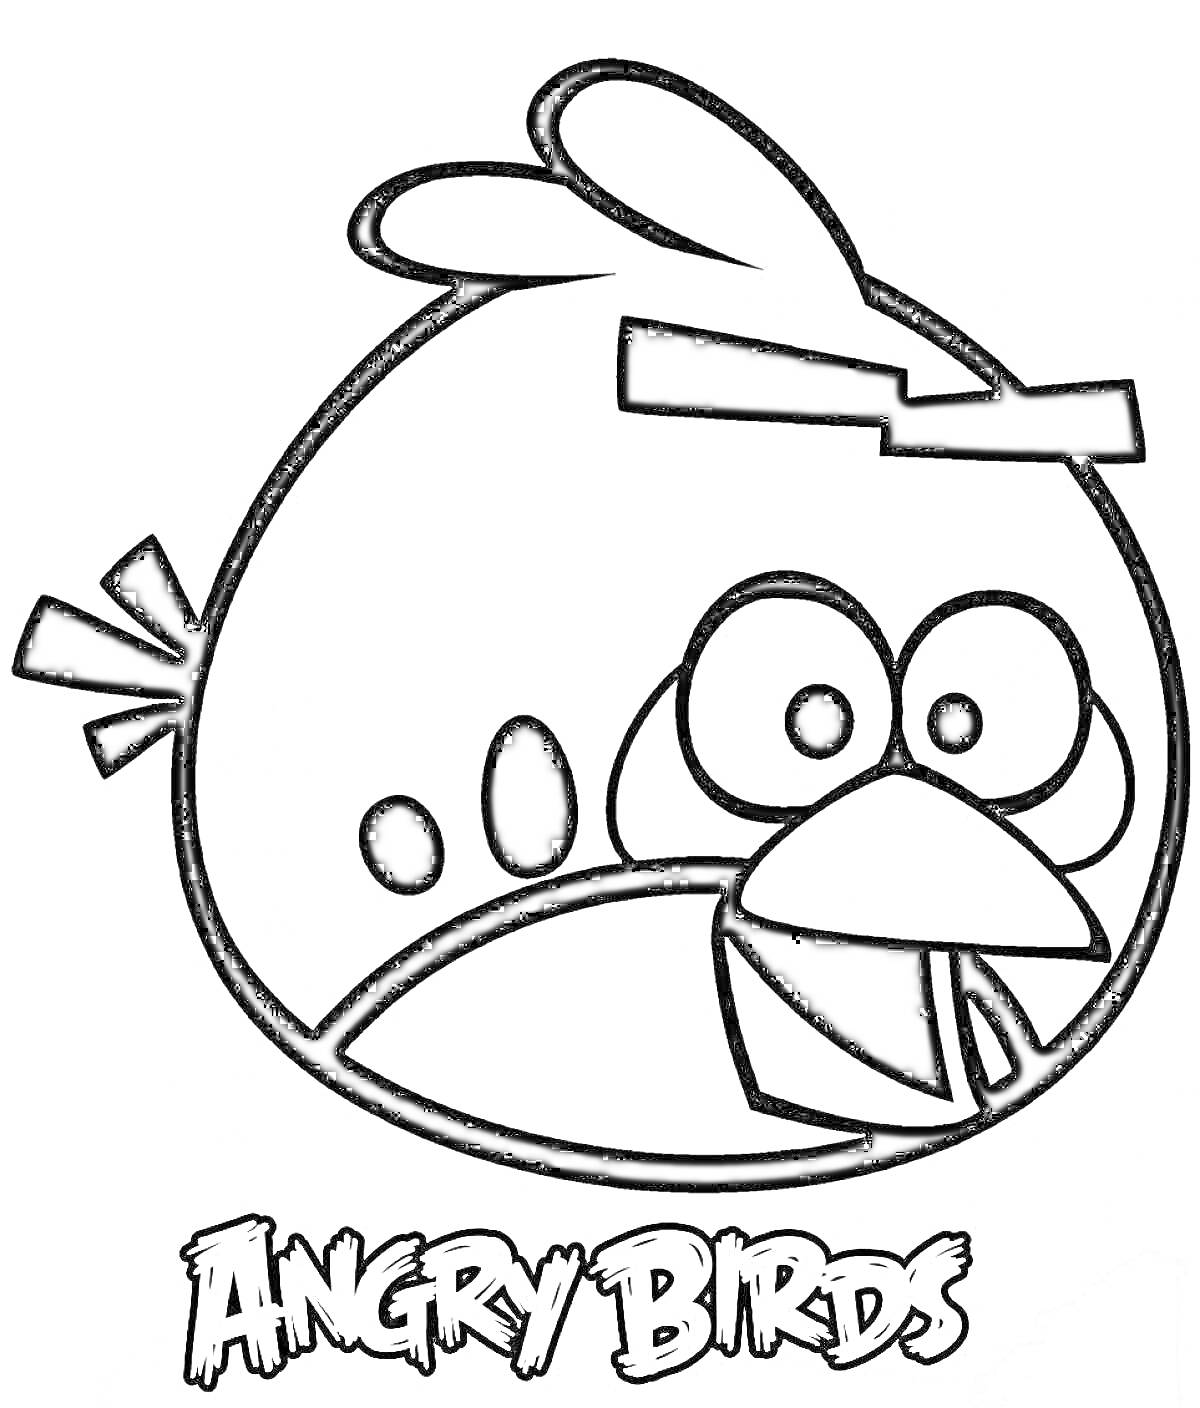 Раскраска Голова птицы с хохолком и клювом из Angry Birds, заголовок 